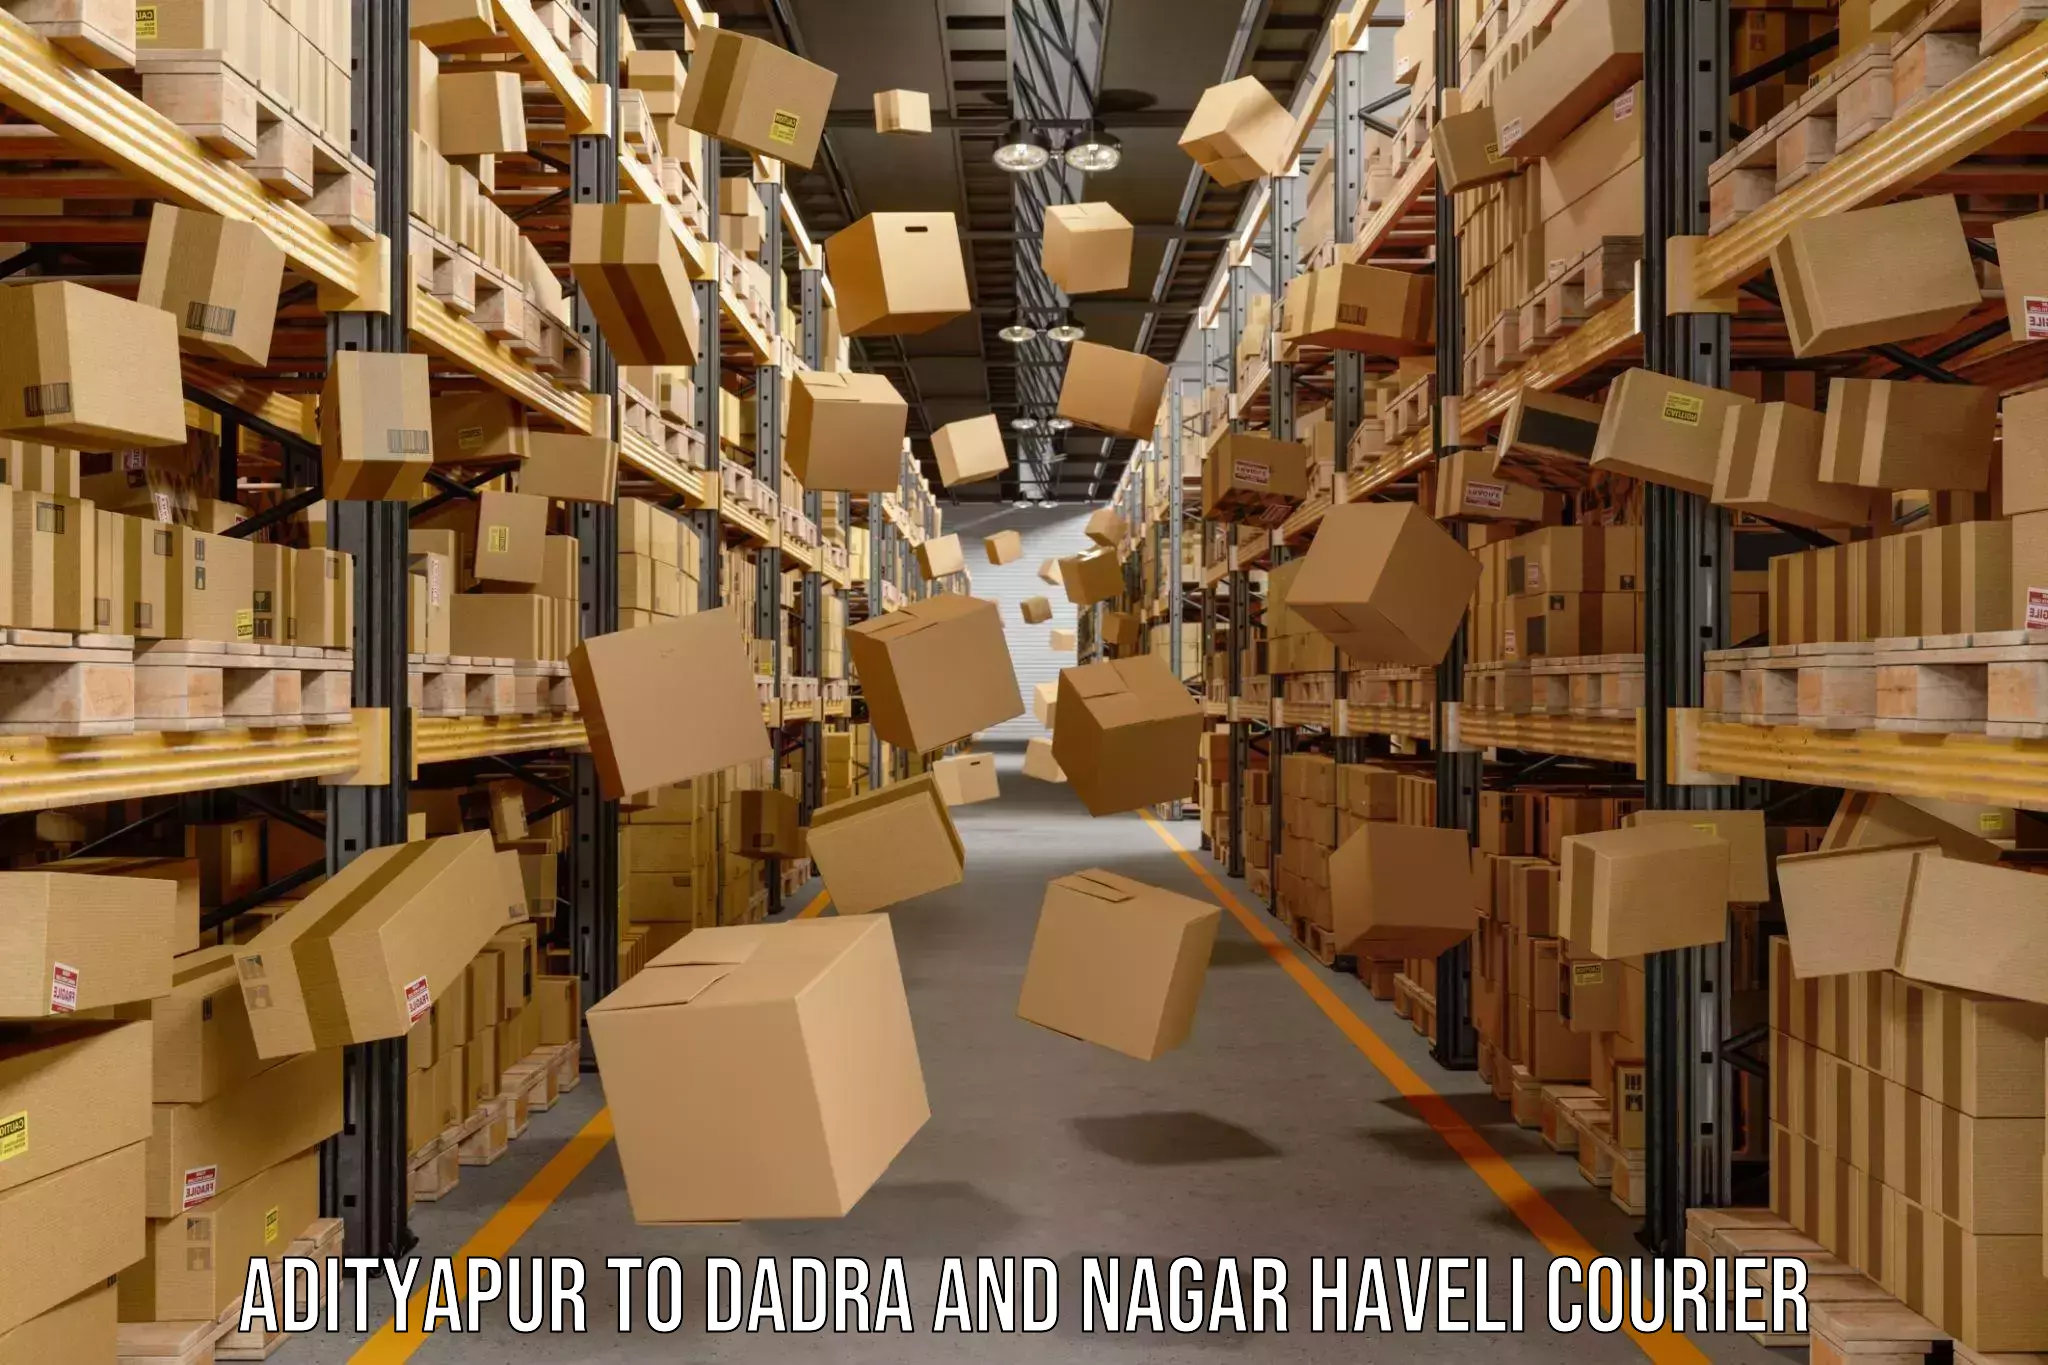 Global shipping networks Adityapur to Dadra and Nagar Haveli